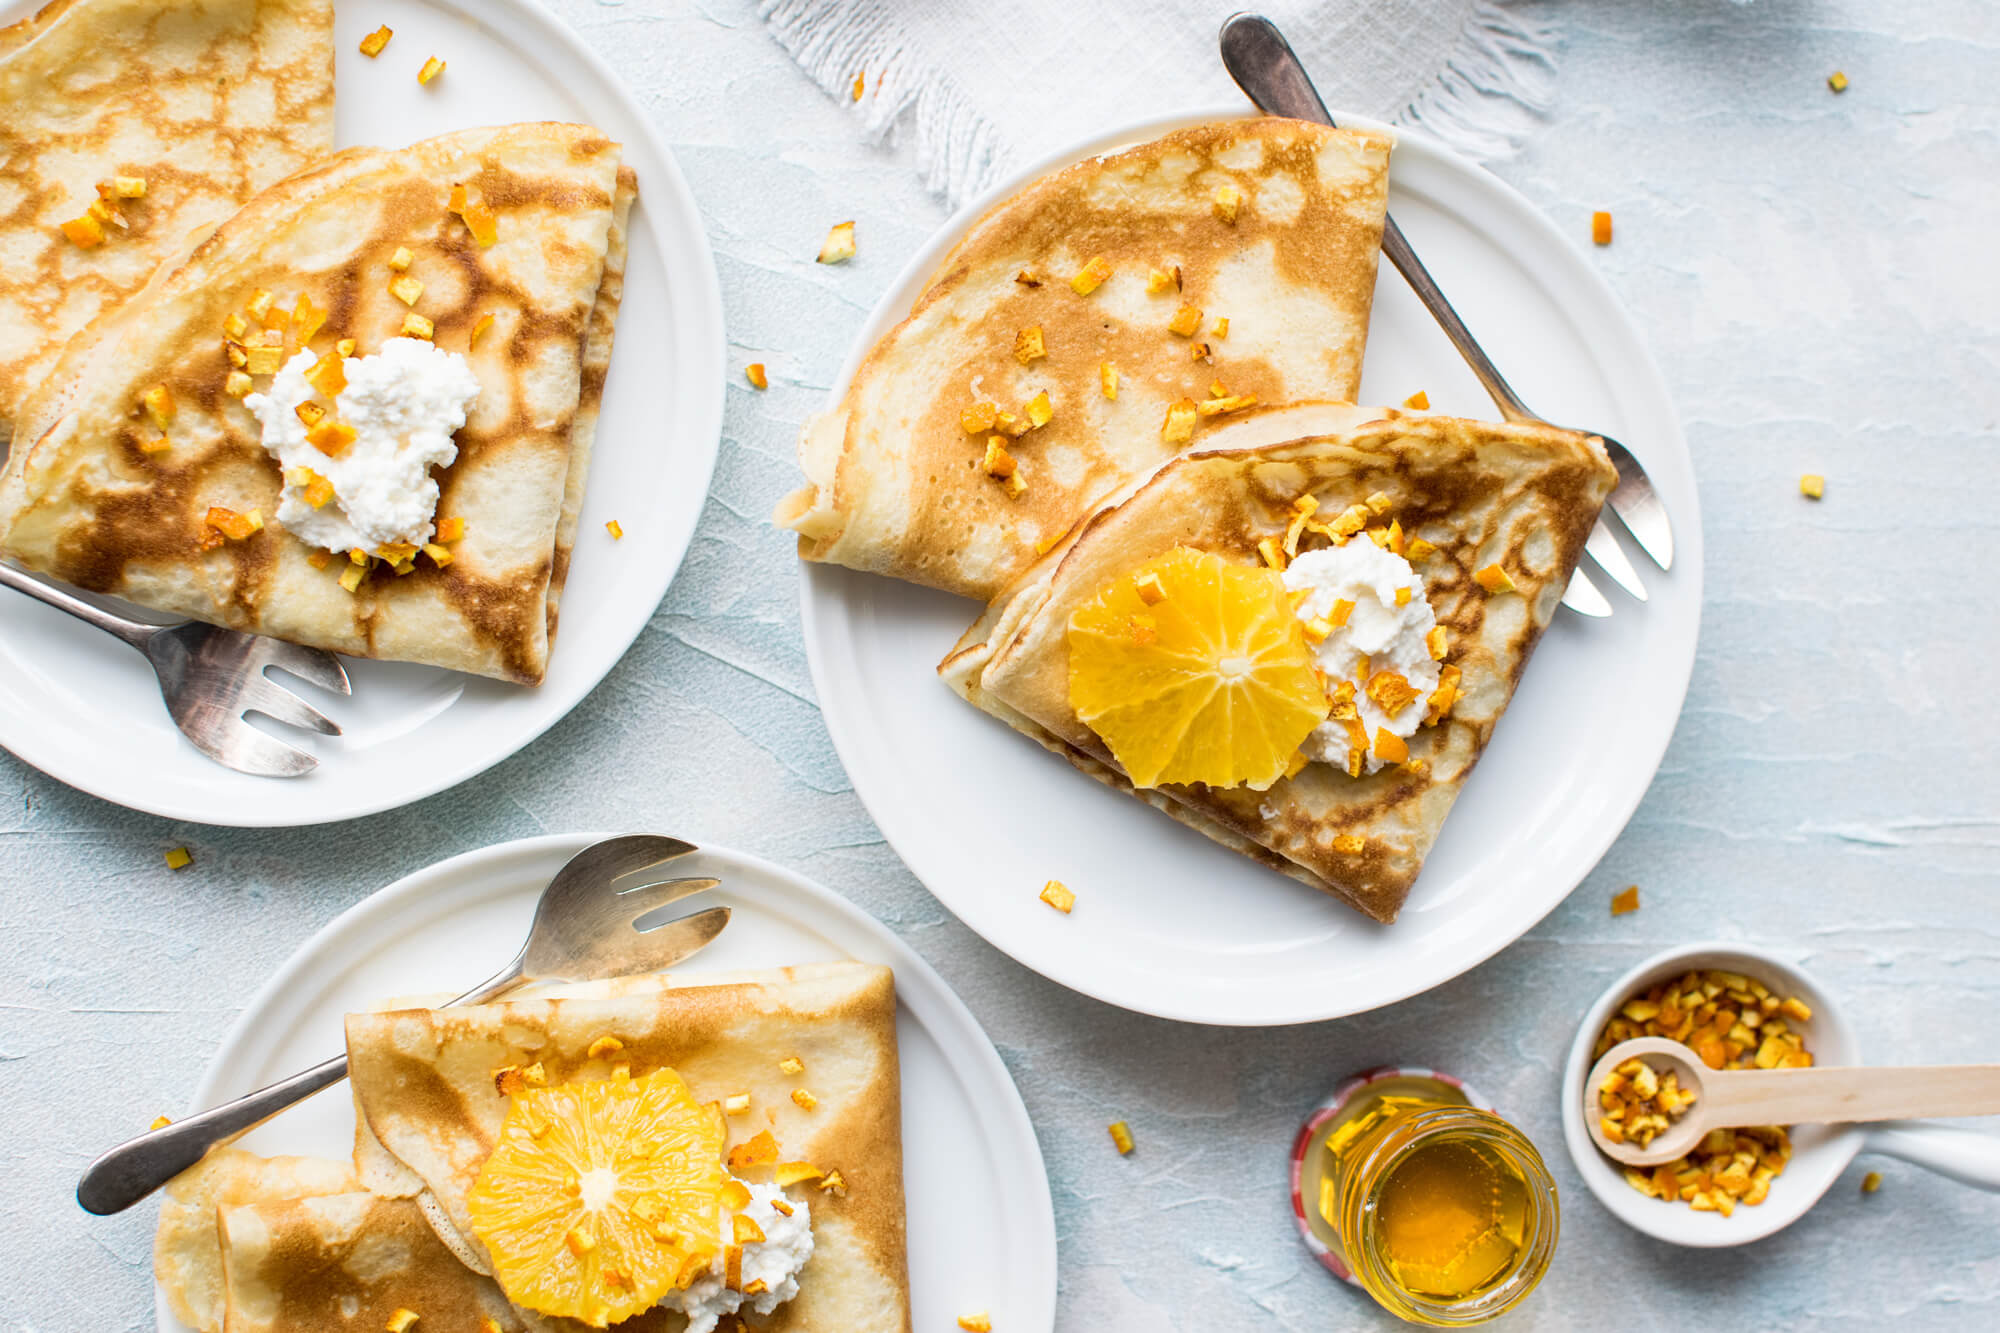 Aprenda como fazer uma panqueca de banana com ovo, aveia e mel deliciosa, nutritiva, saudável e SUPER fácil.